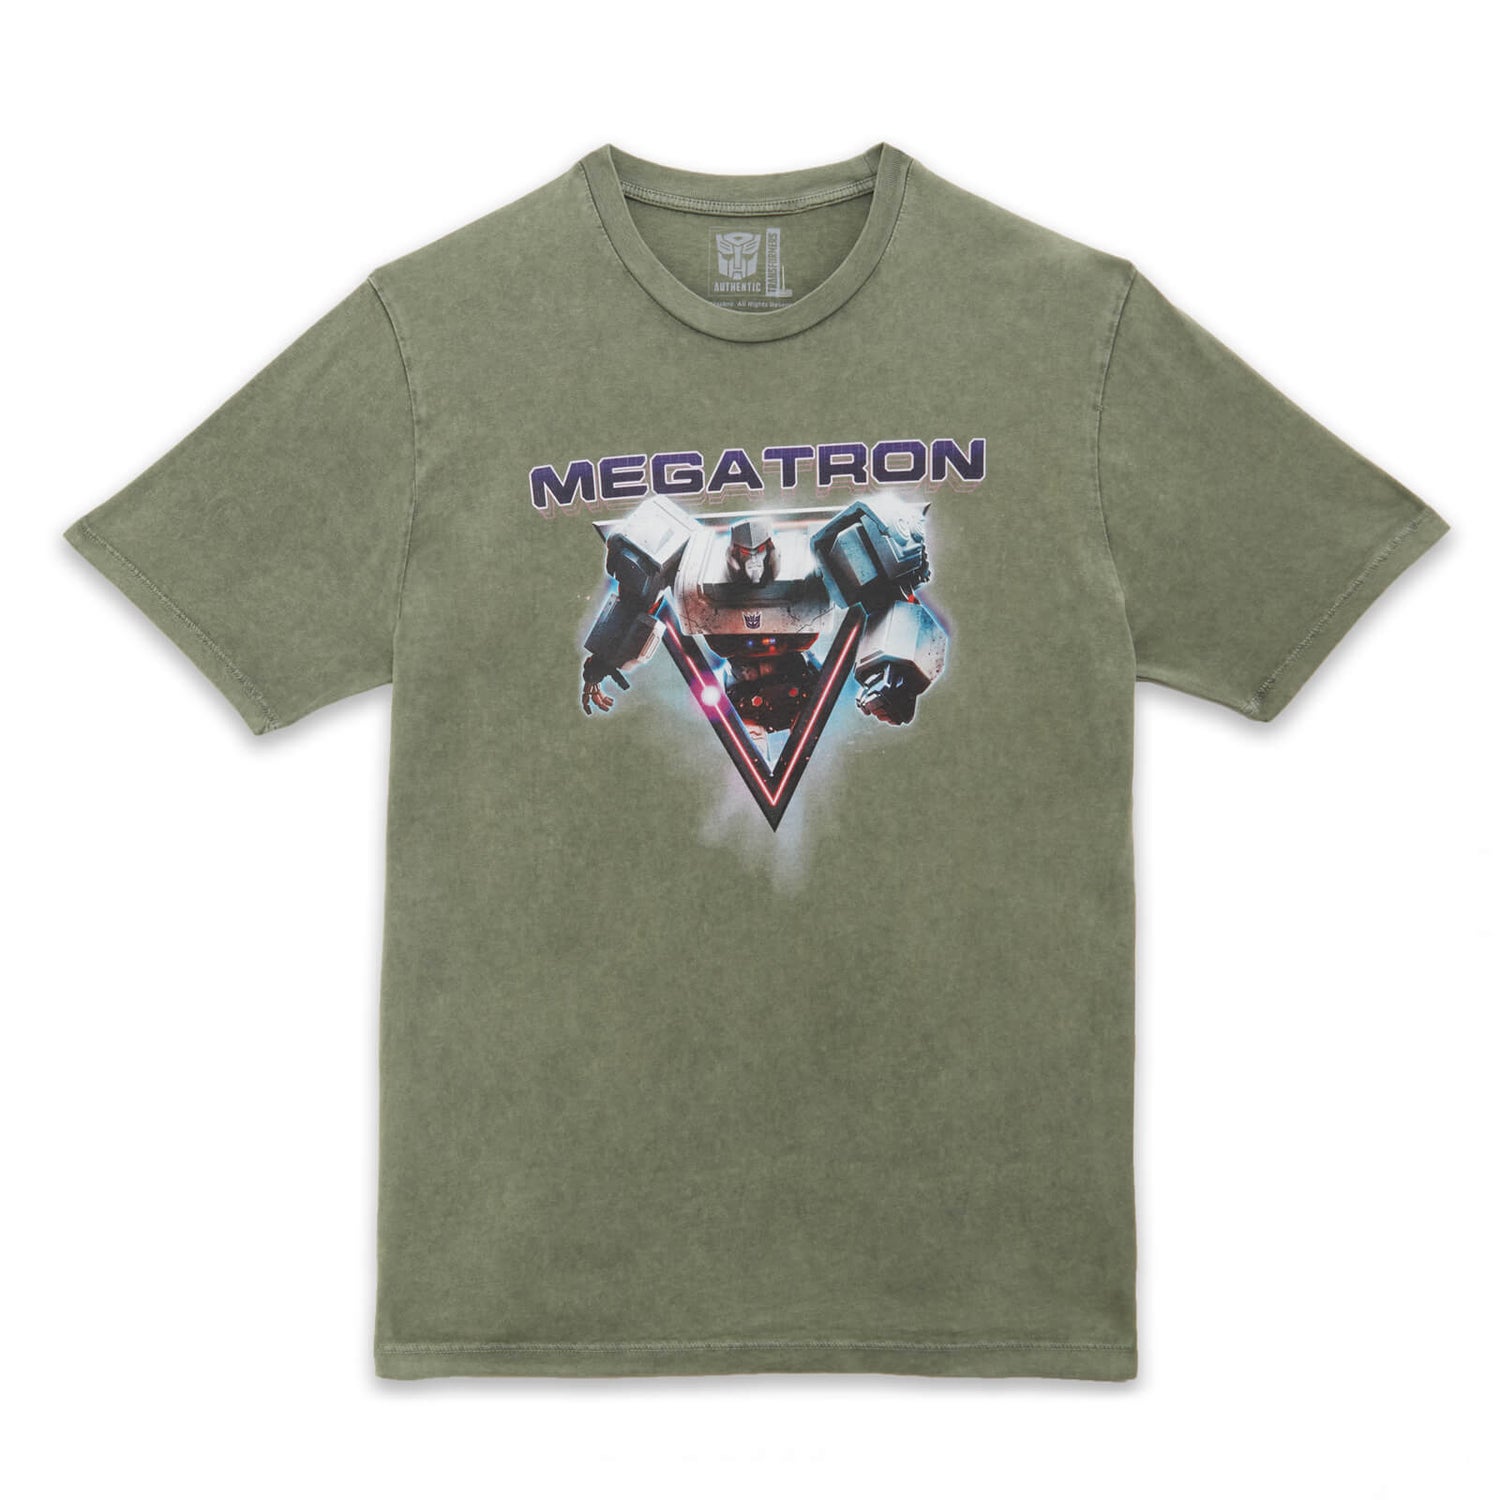 Camiseta unisex Megatron de Transformers - Lavado ácido caqui